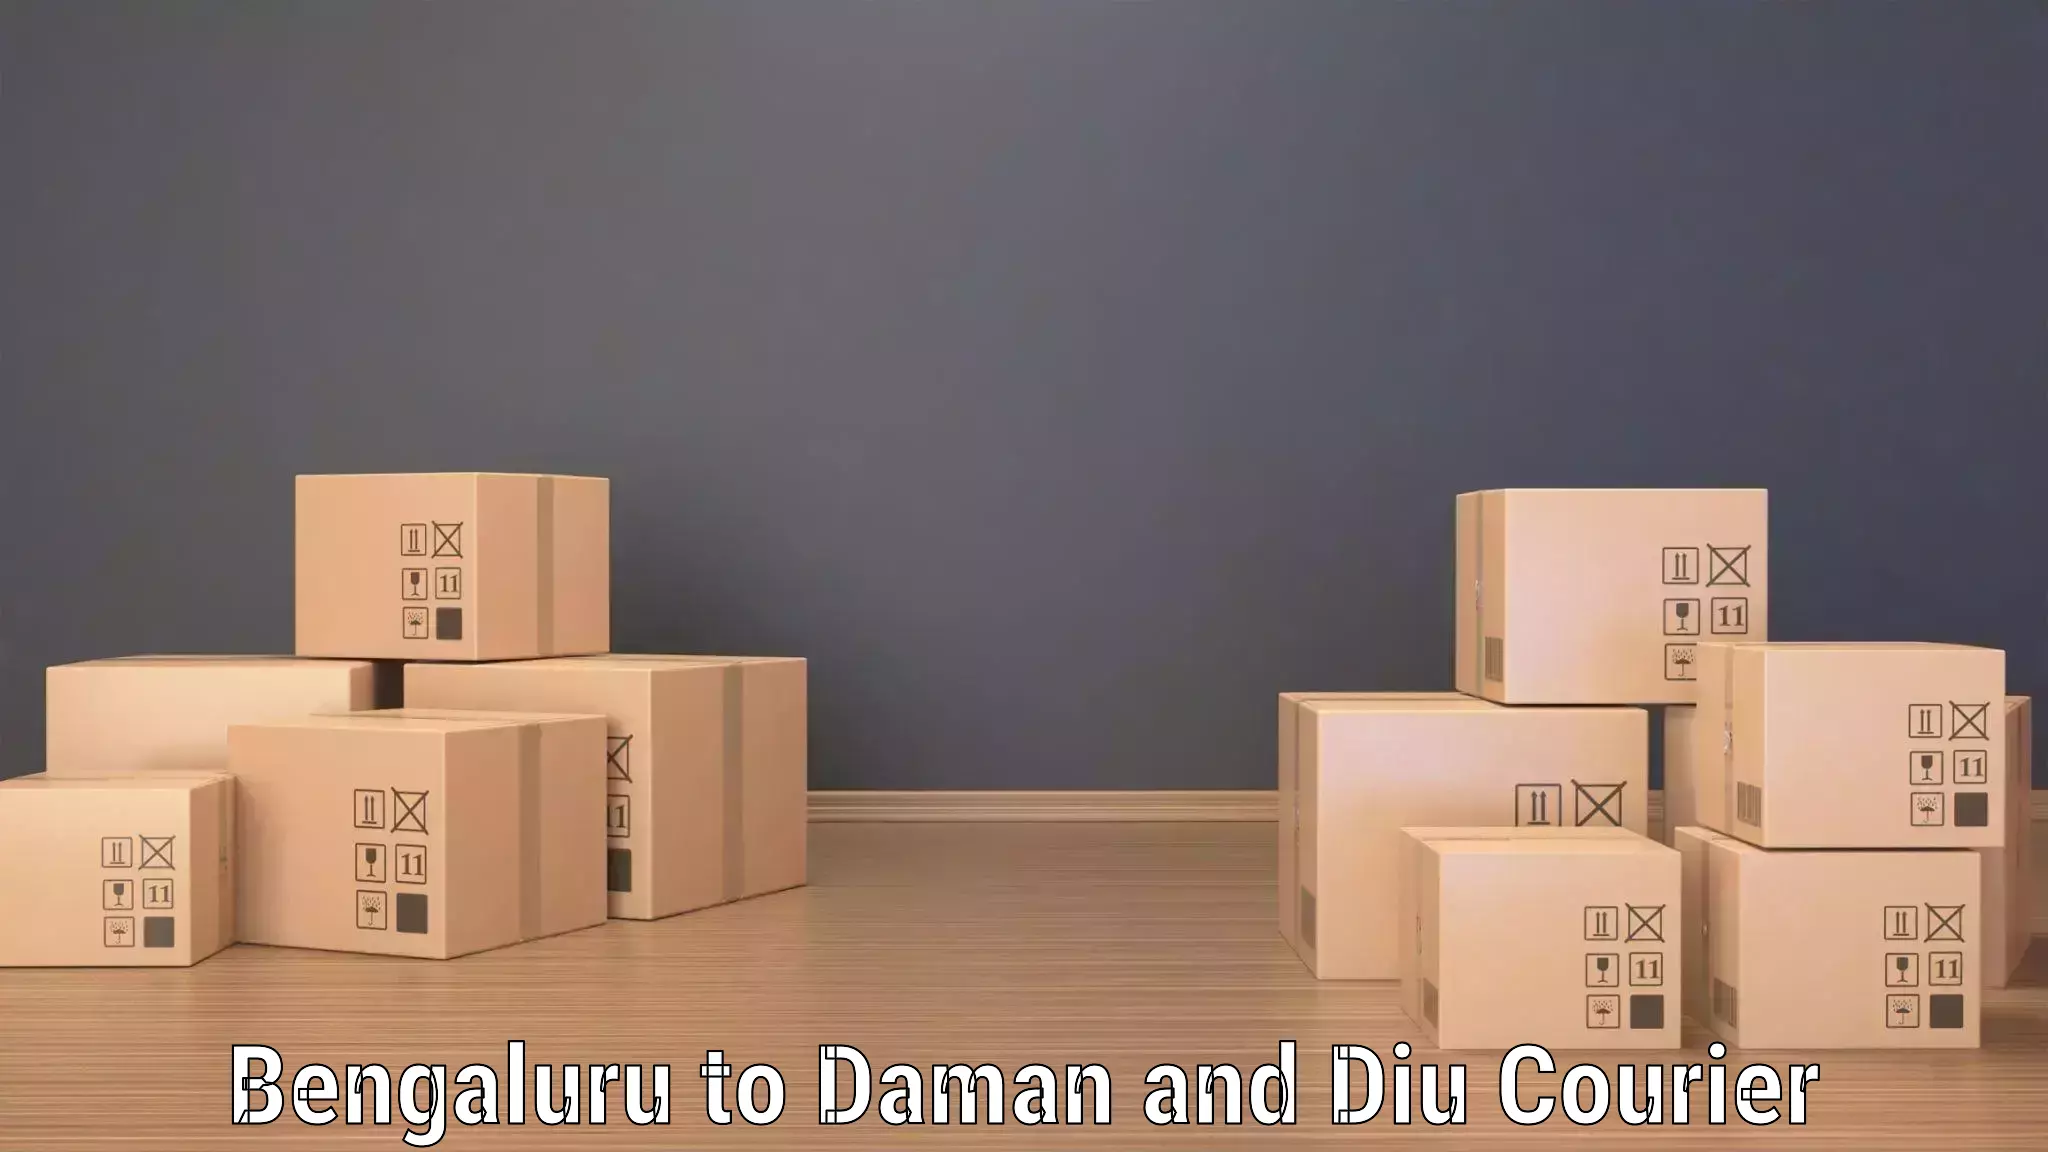 High-performance logistics Bengaluru to Daman and Diu